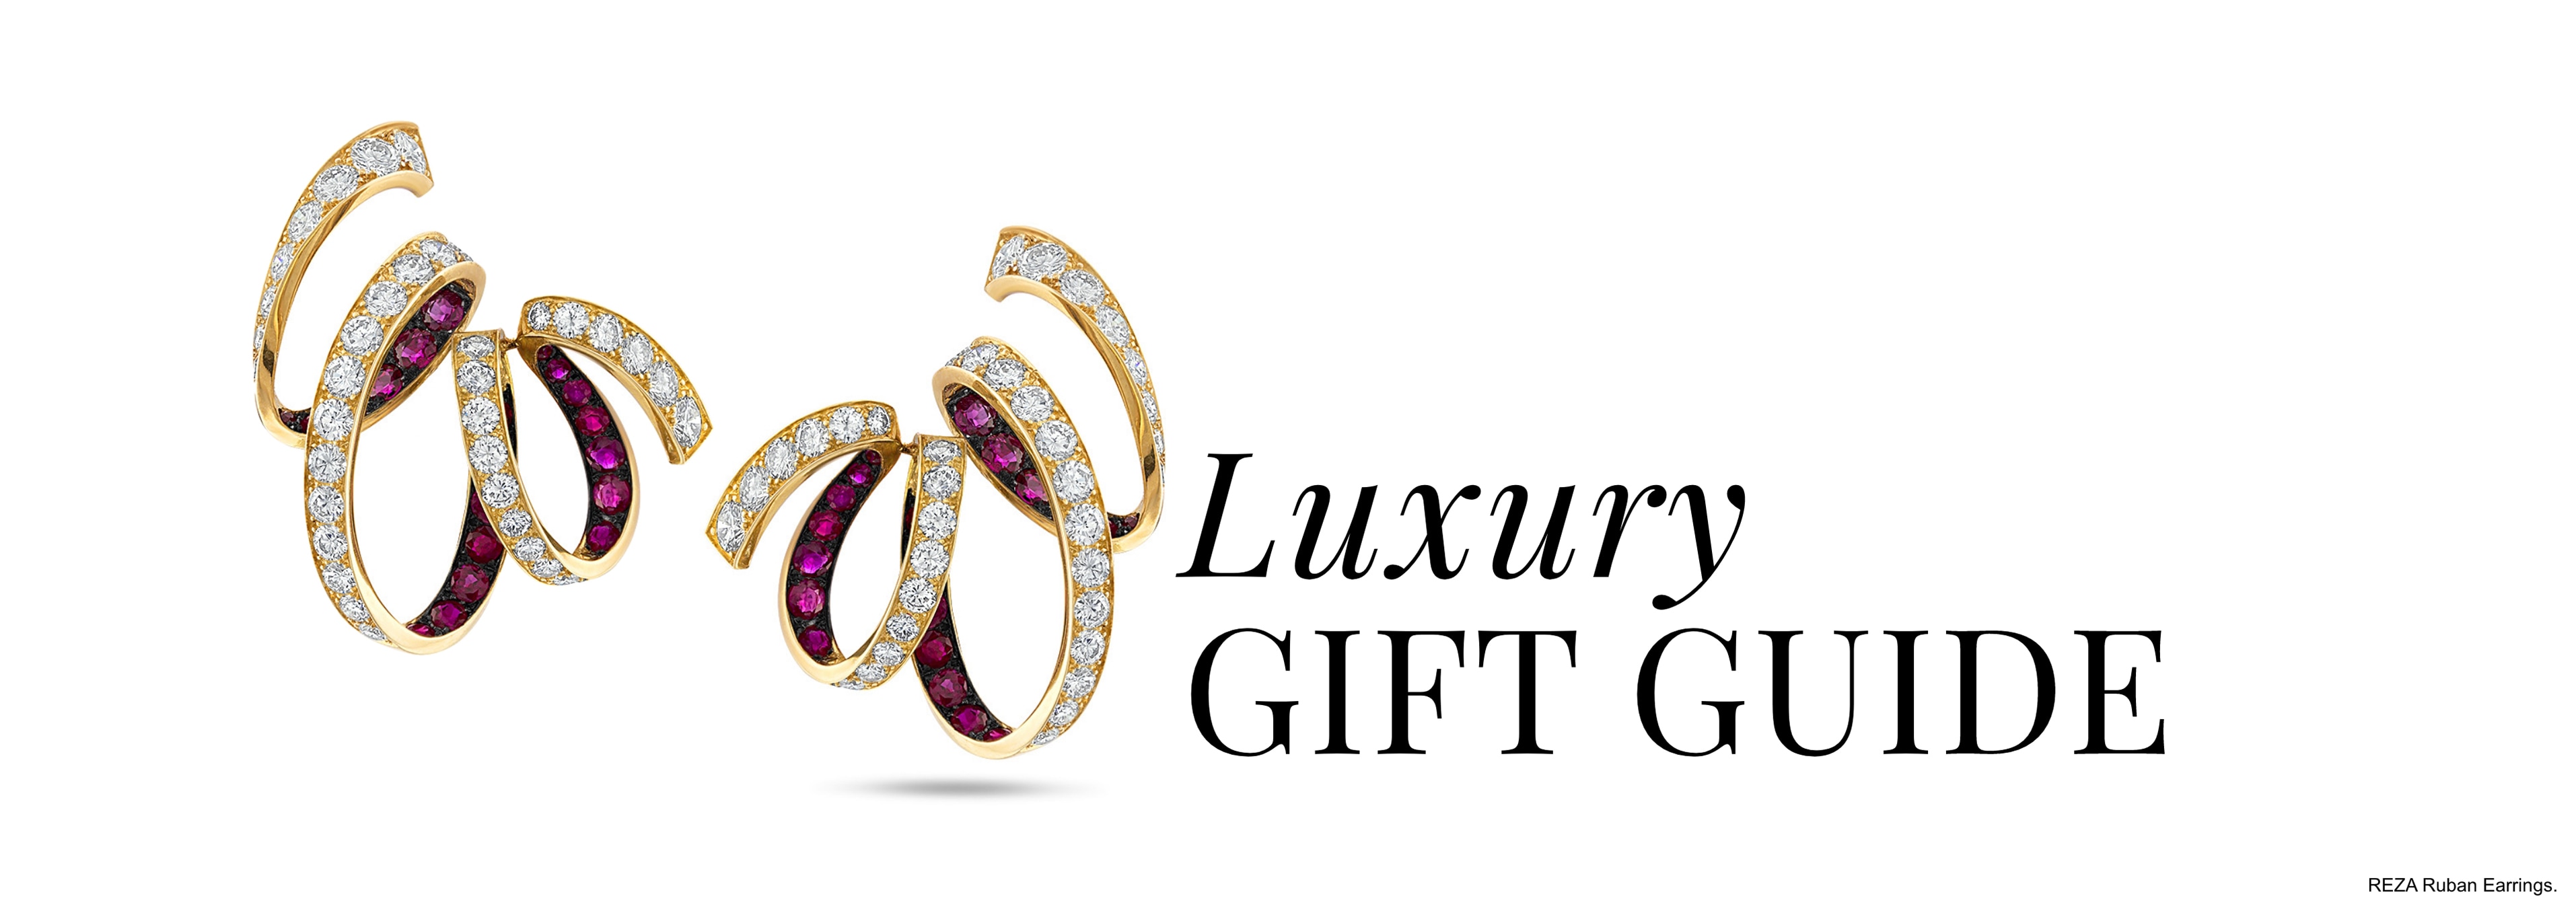 Women’s Luxury Gift Guide